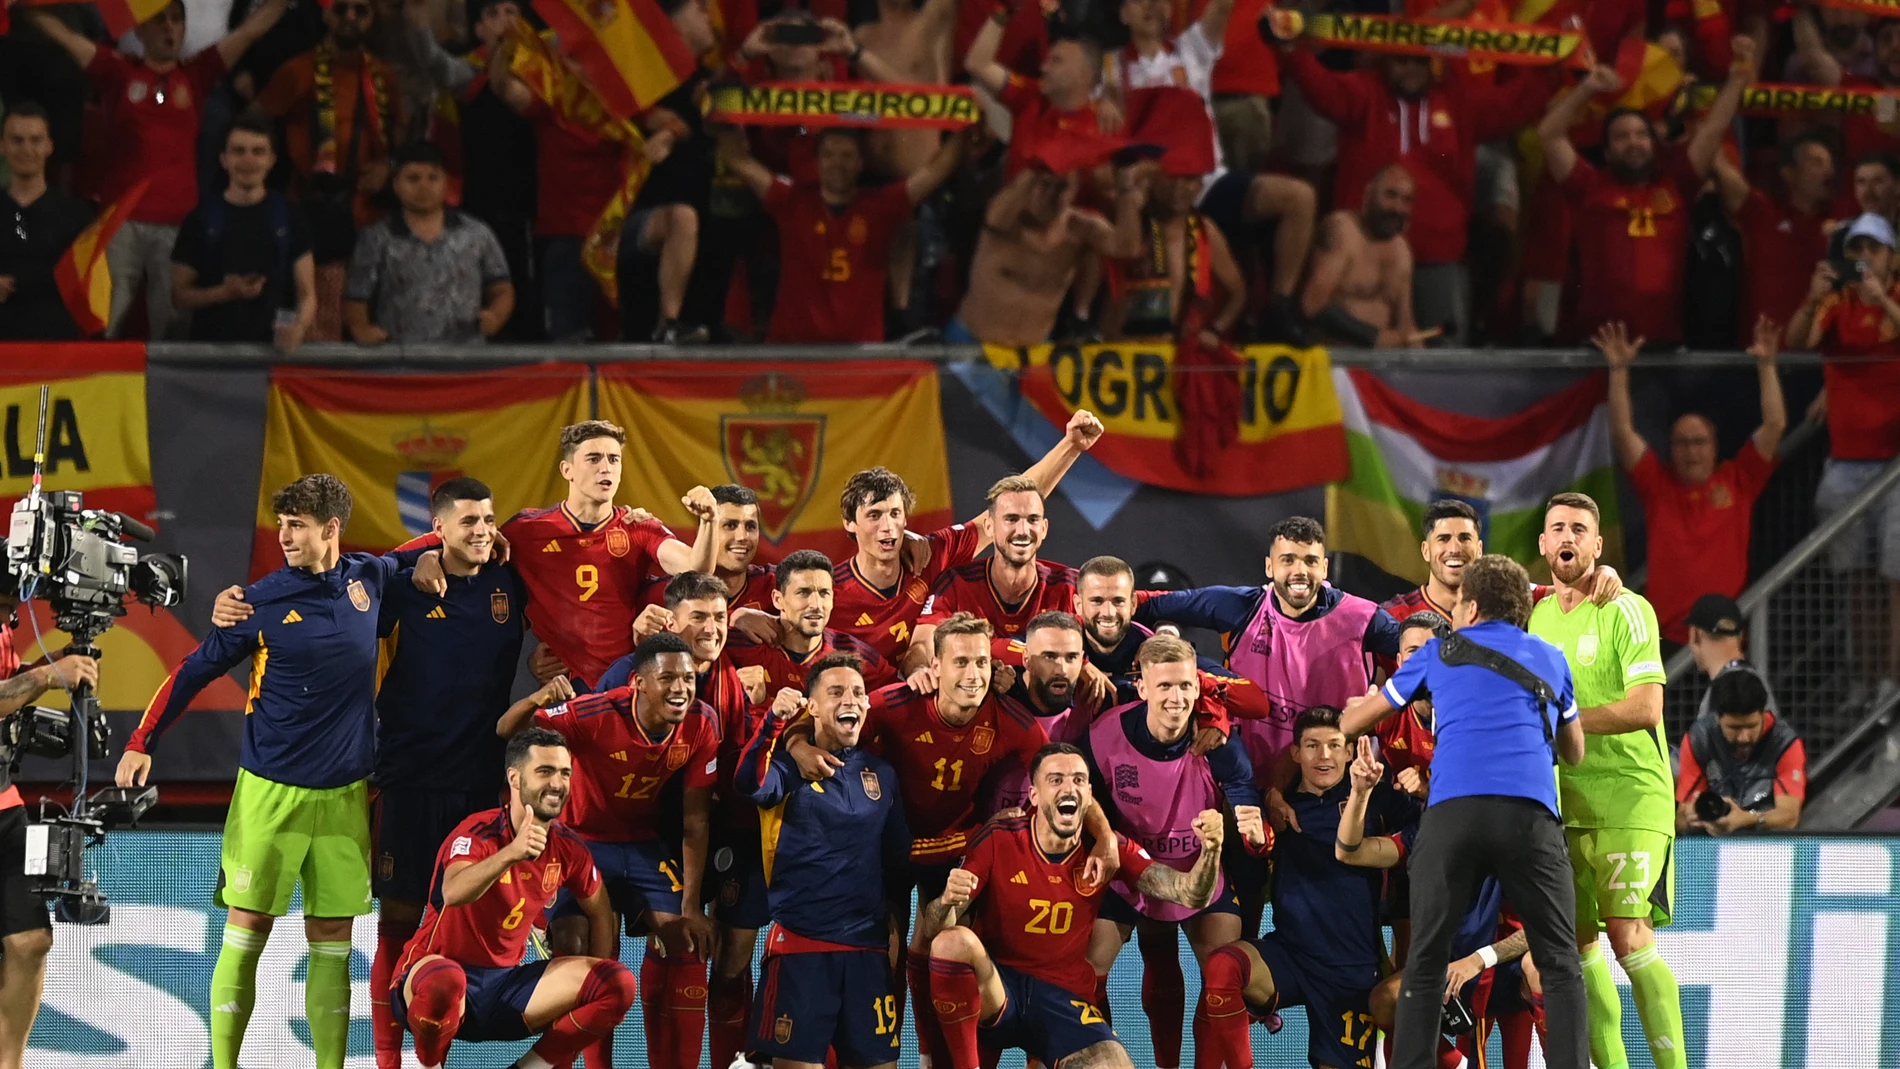 Fútbol/Selección.- Más de 7,2 millones de espectadores vieron la victoria de España en la Liga de Naciones